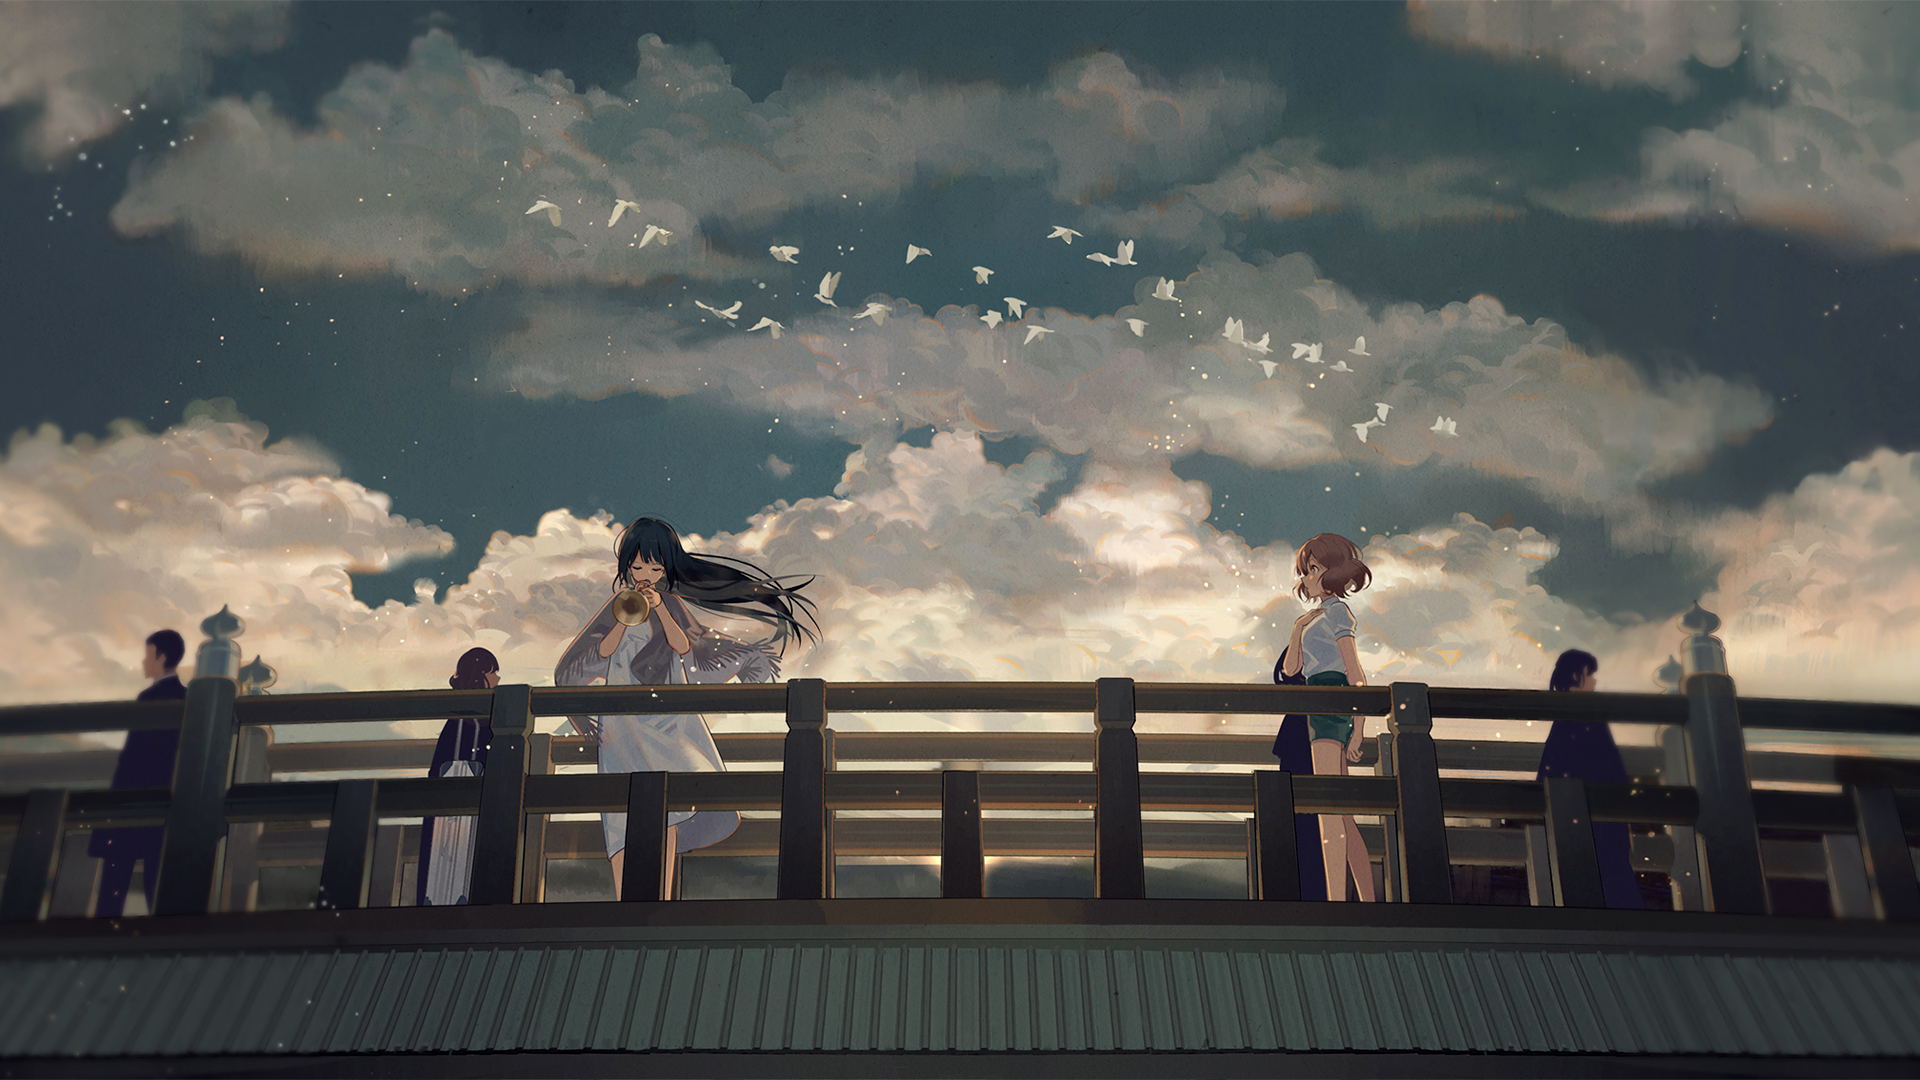 Lake and Bridge Anime Background by idonlikedesigngrafic on DeviantArt